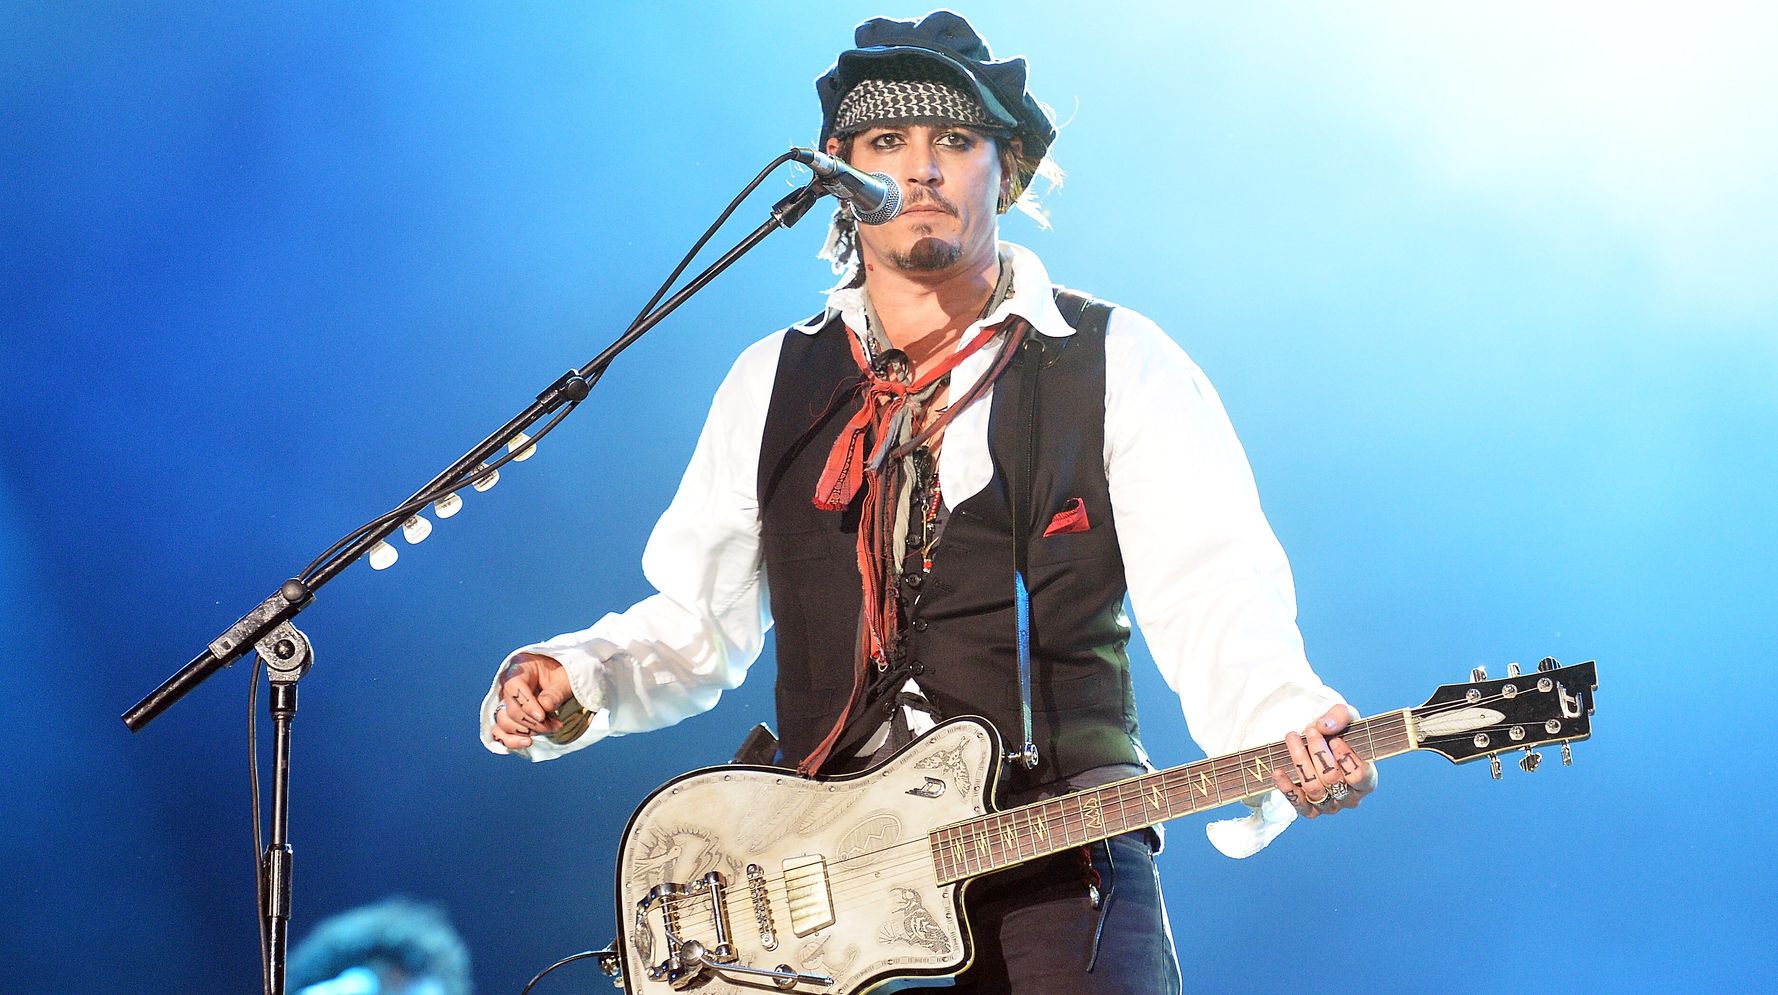 Johnny Depp joue un concert surprise au concert de Jeff Beck en attendant le verdict du procès